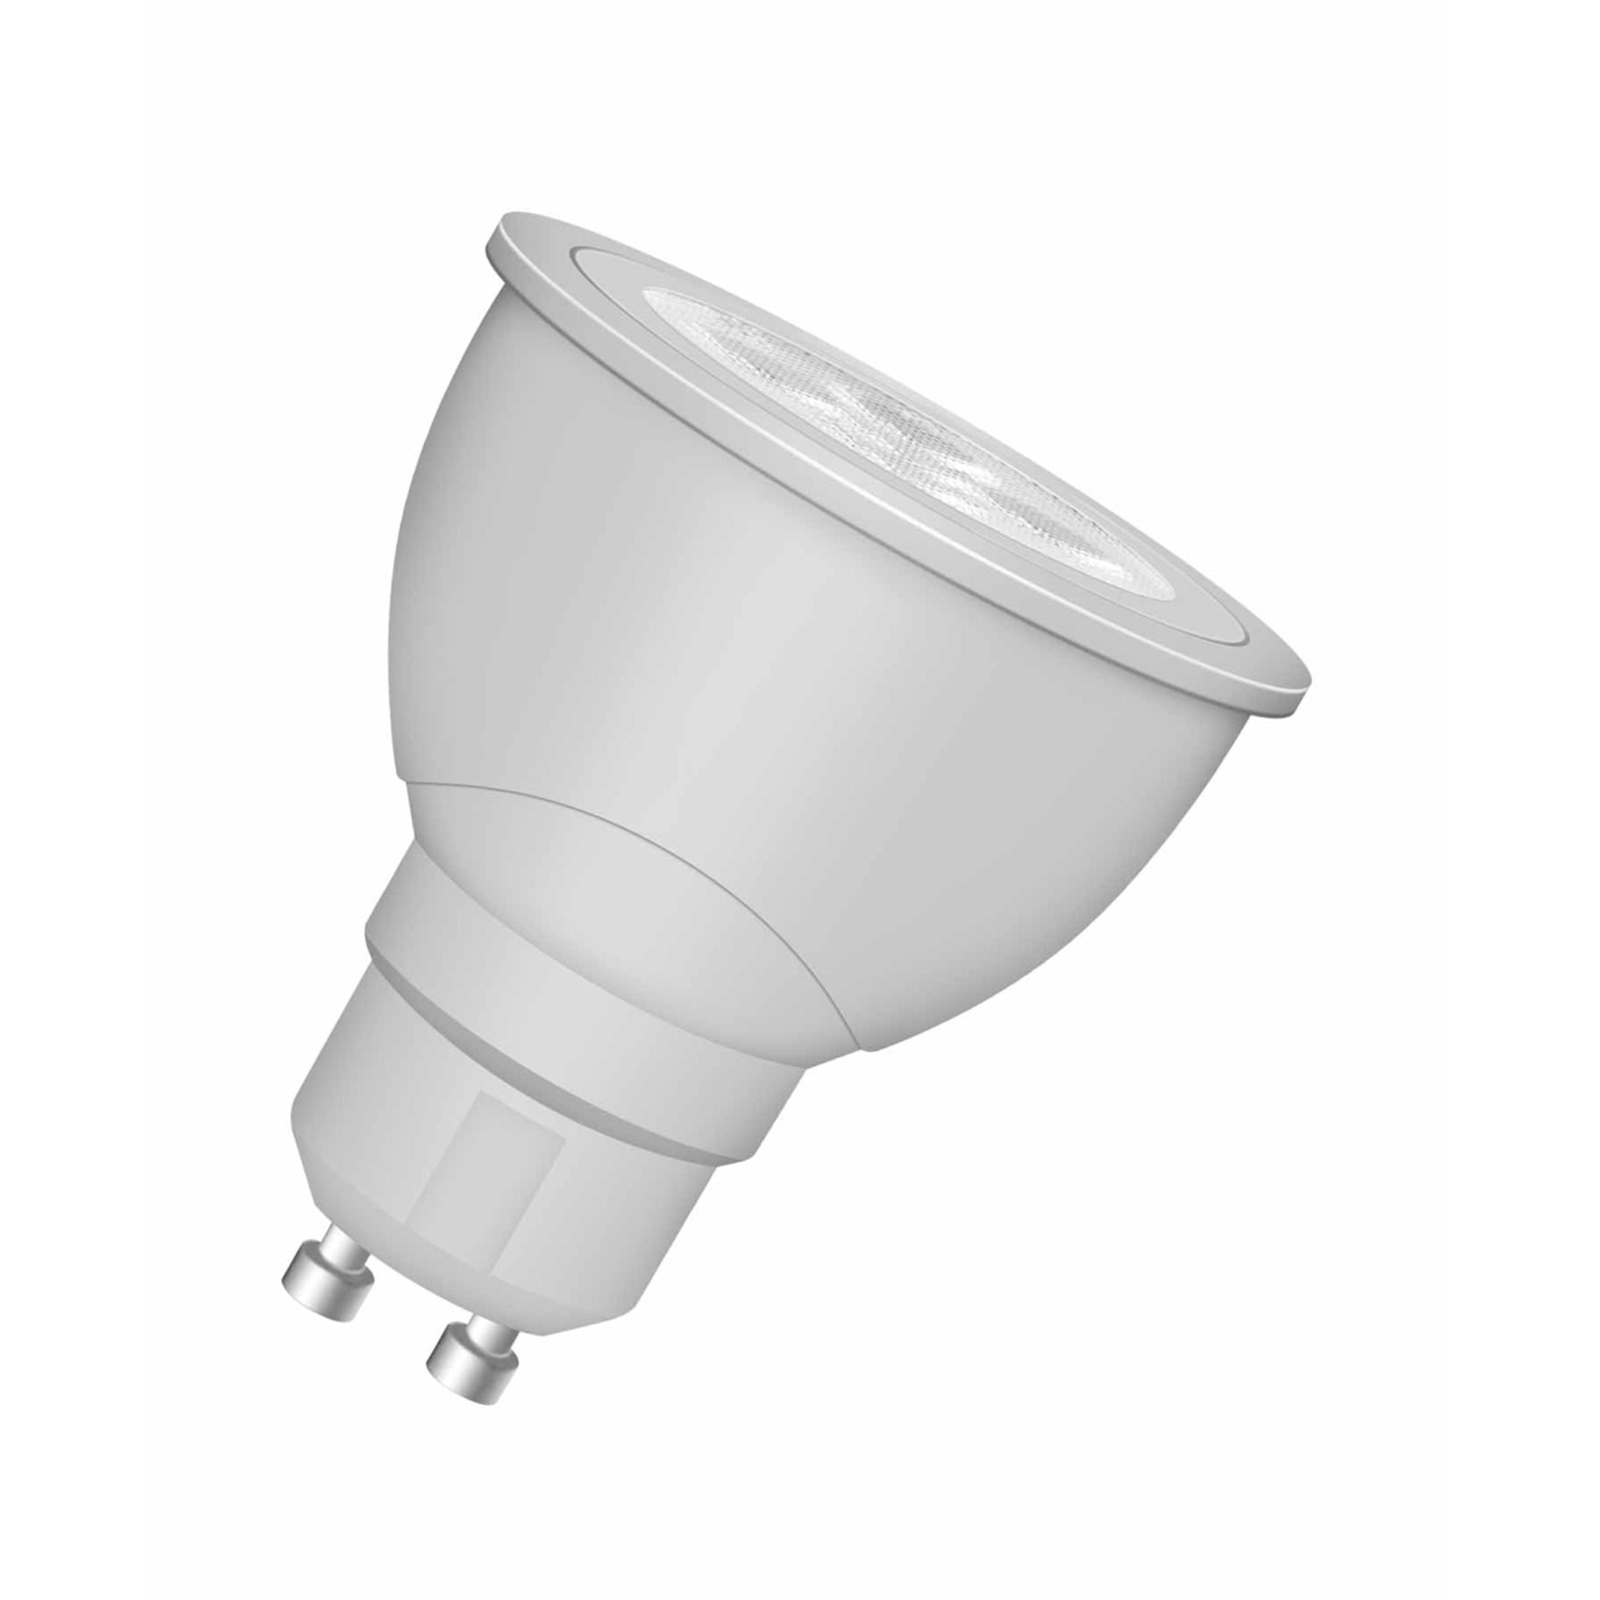 Osram 3.3W LED Warm White Dimmable GU10 Globe